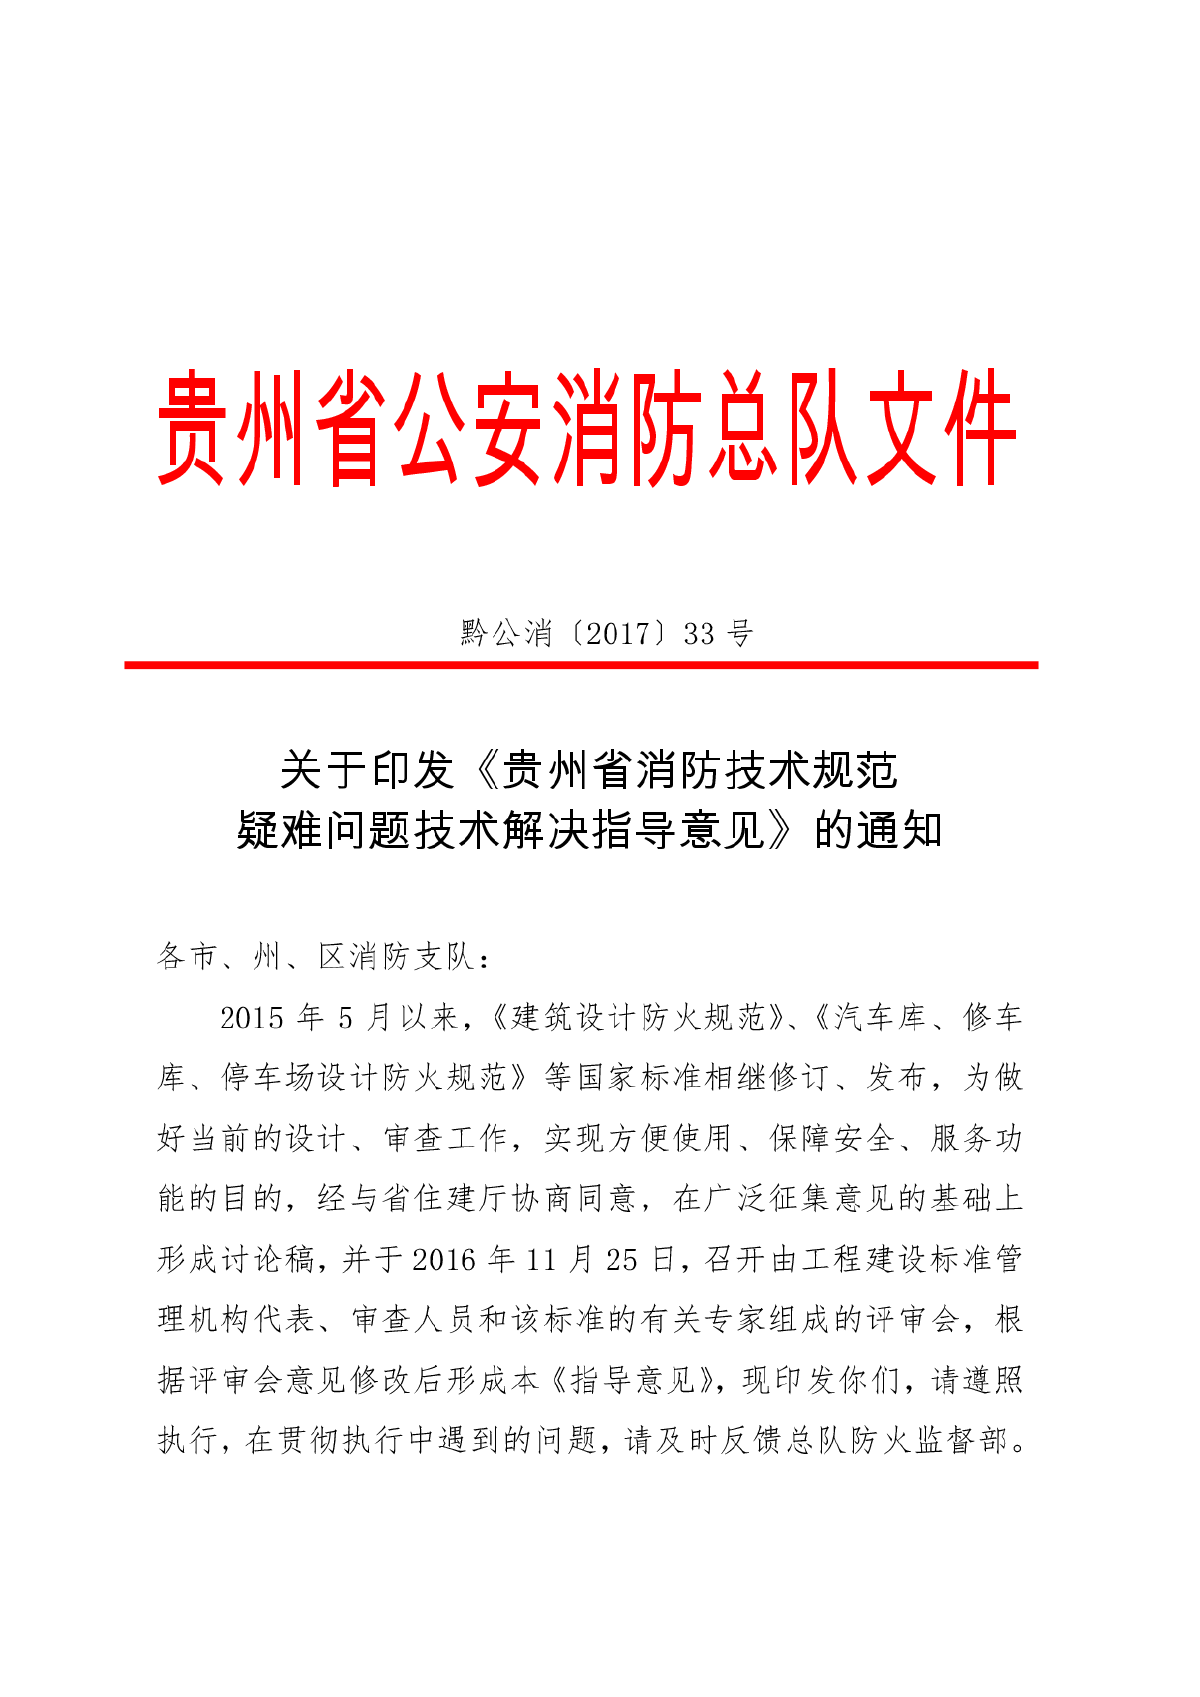 黔公消[2017]33号贵州省消防技术规范疑难问题技术解决指导意见-图一